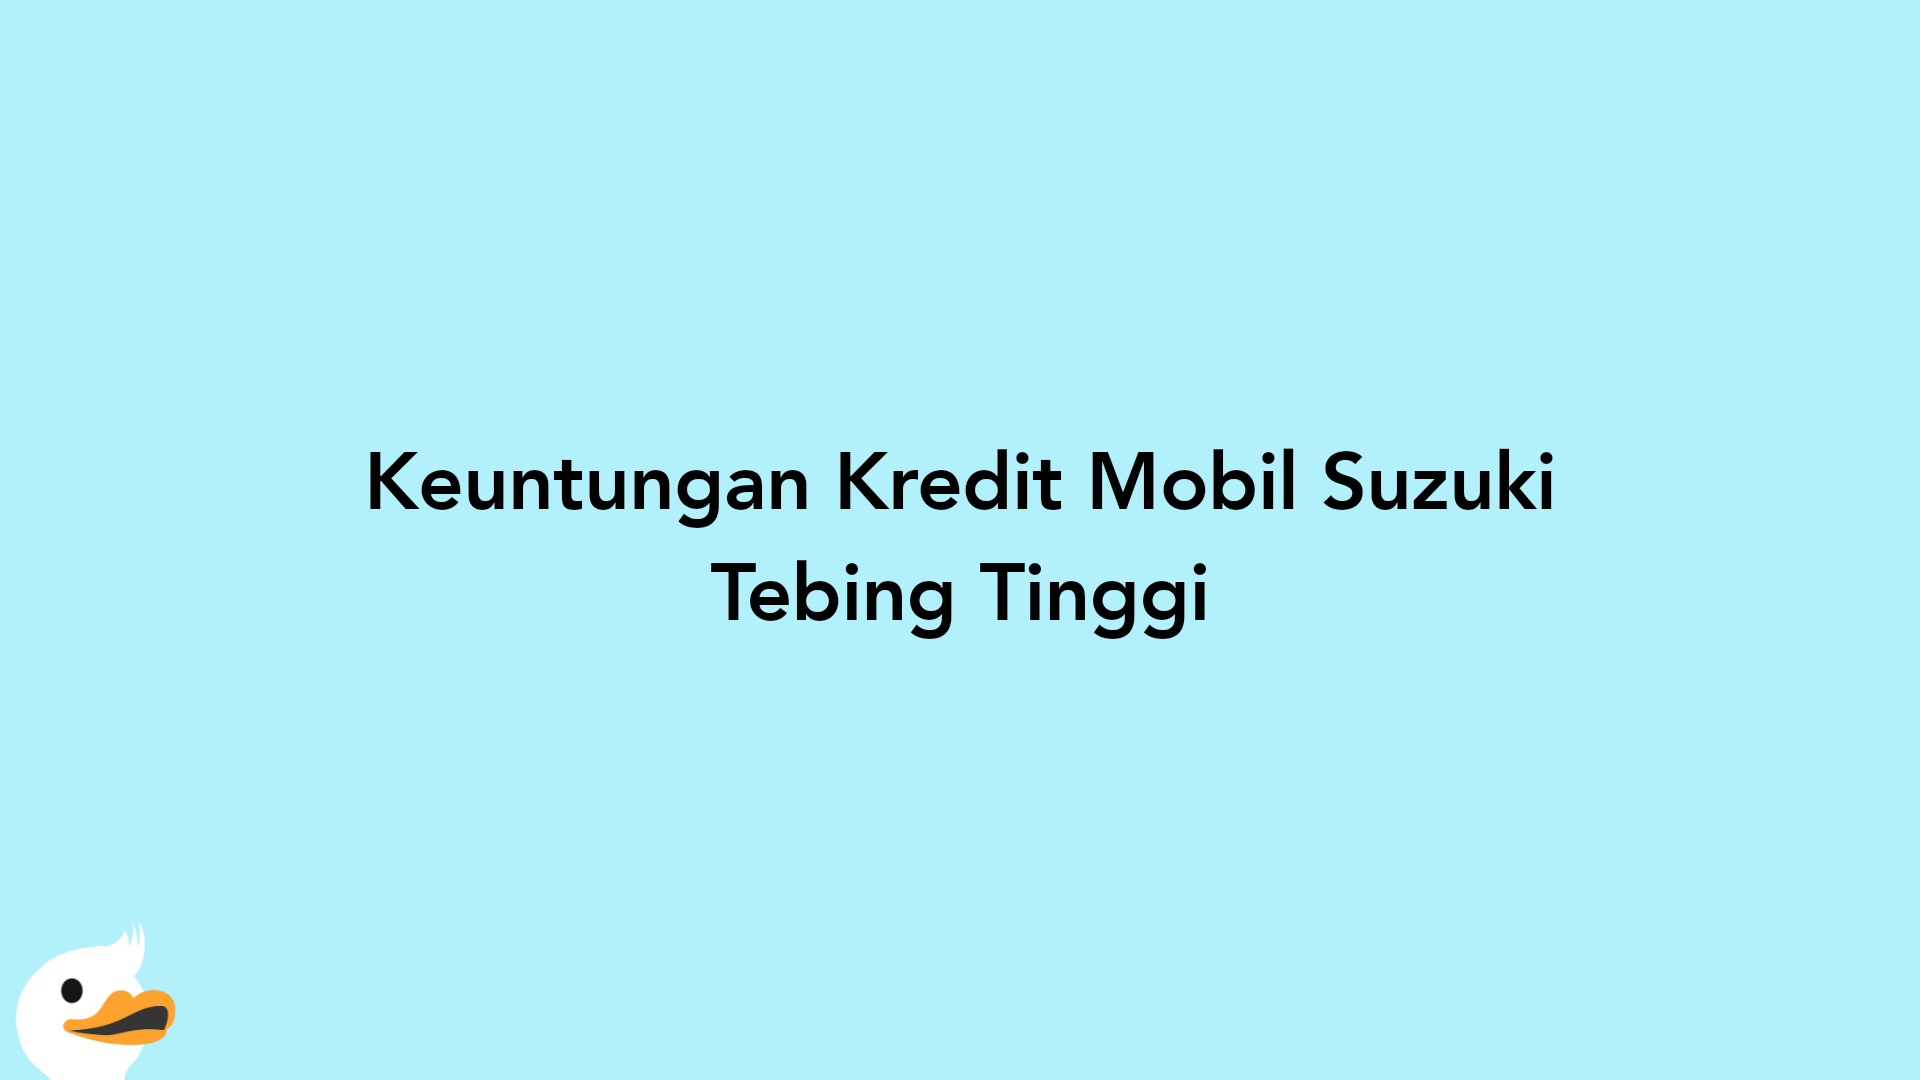 Keuntungan Kredit Mobil Suzuki Tebing Tinggi